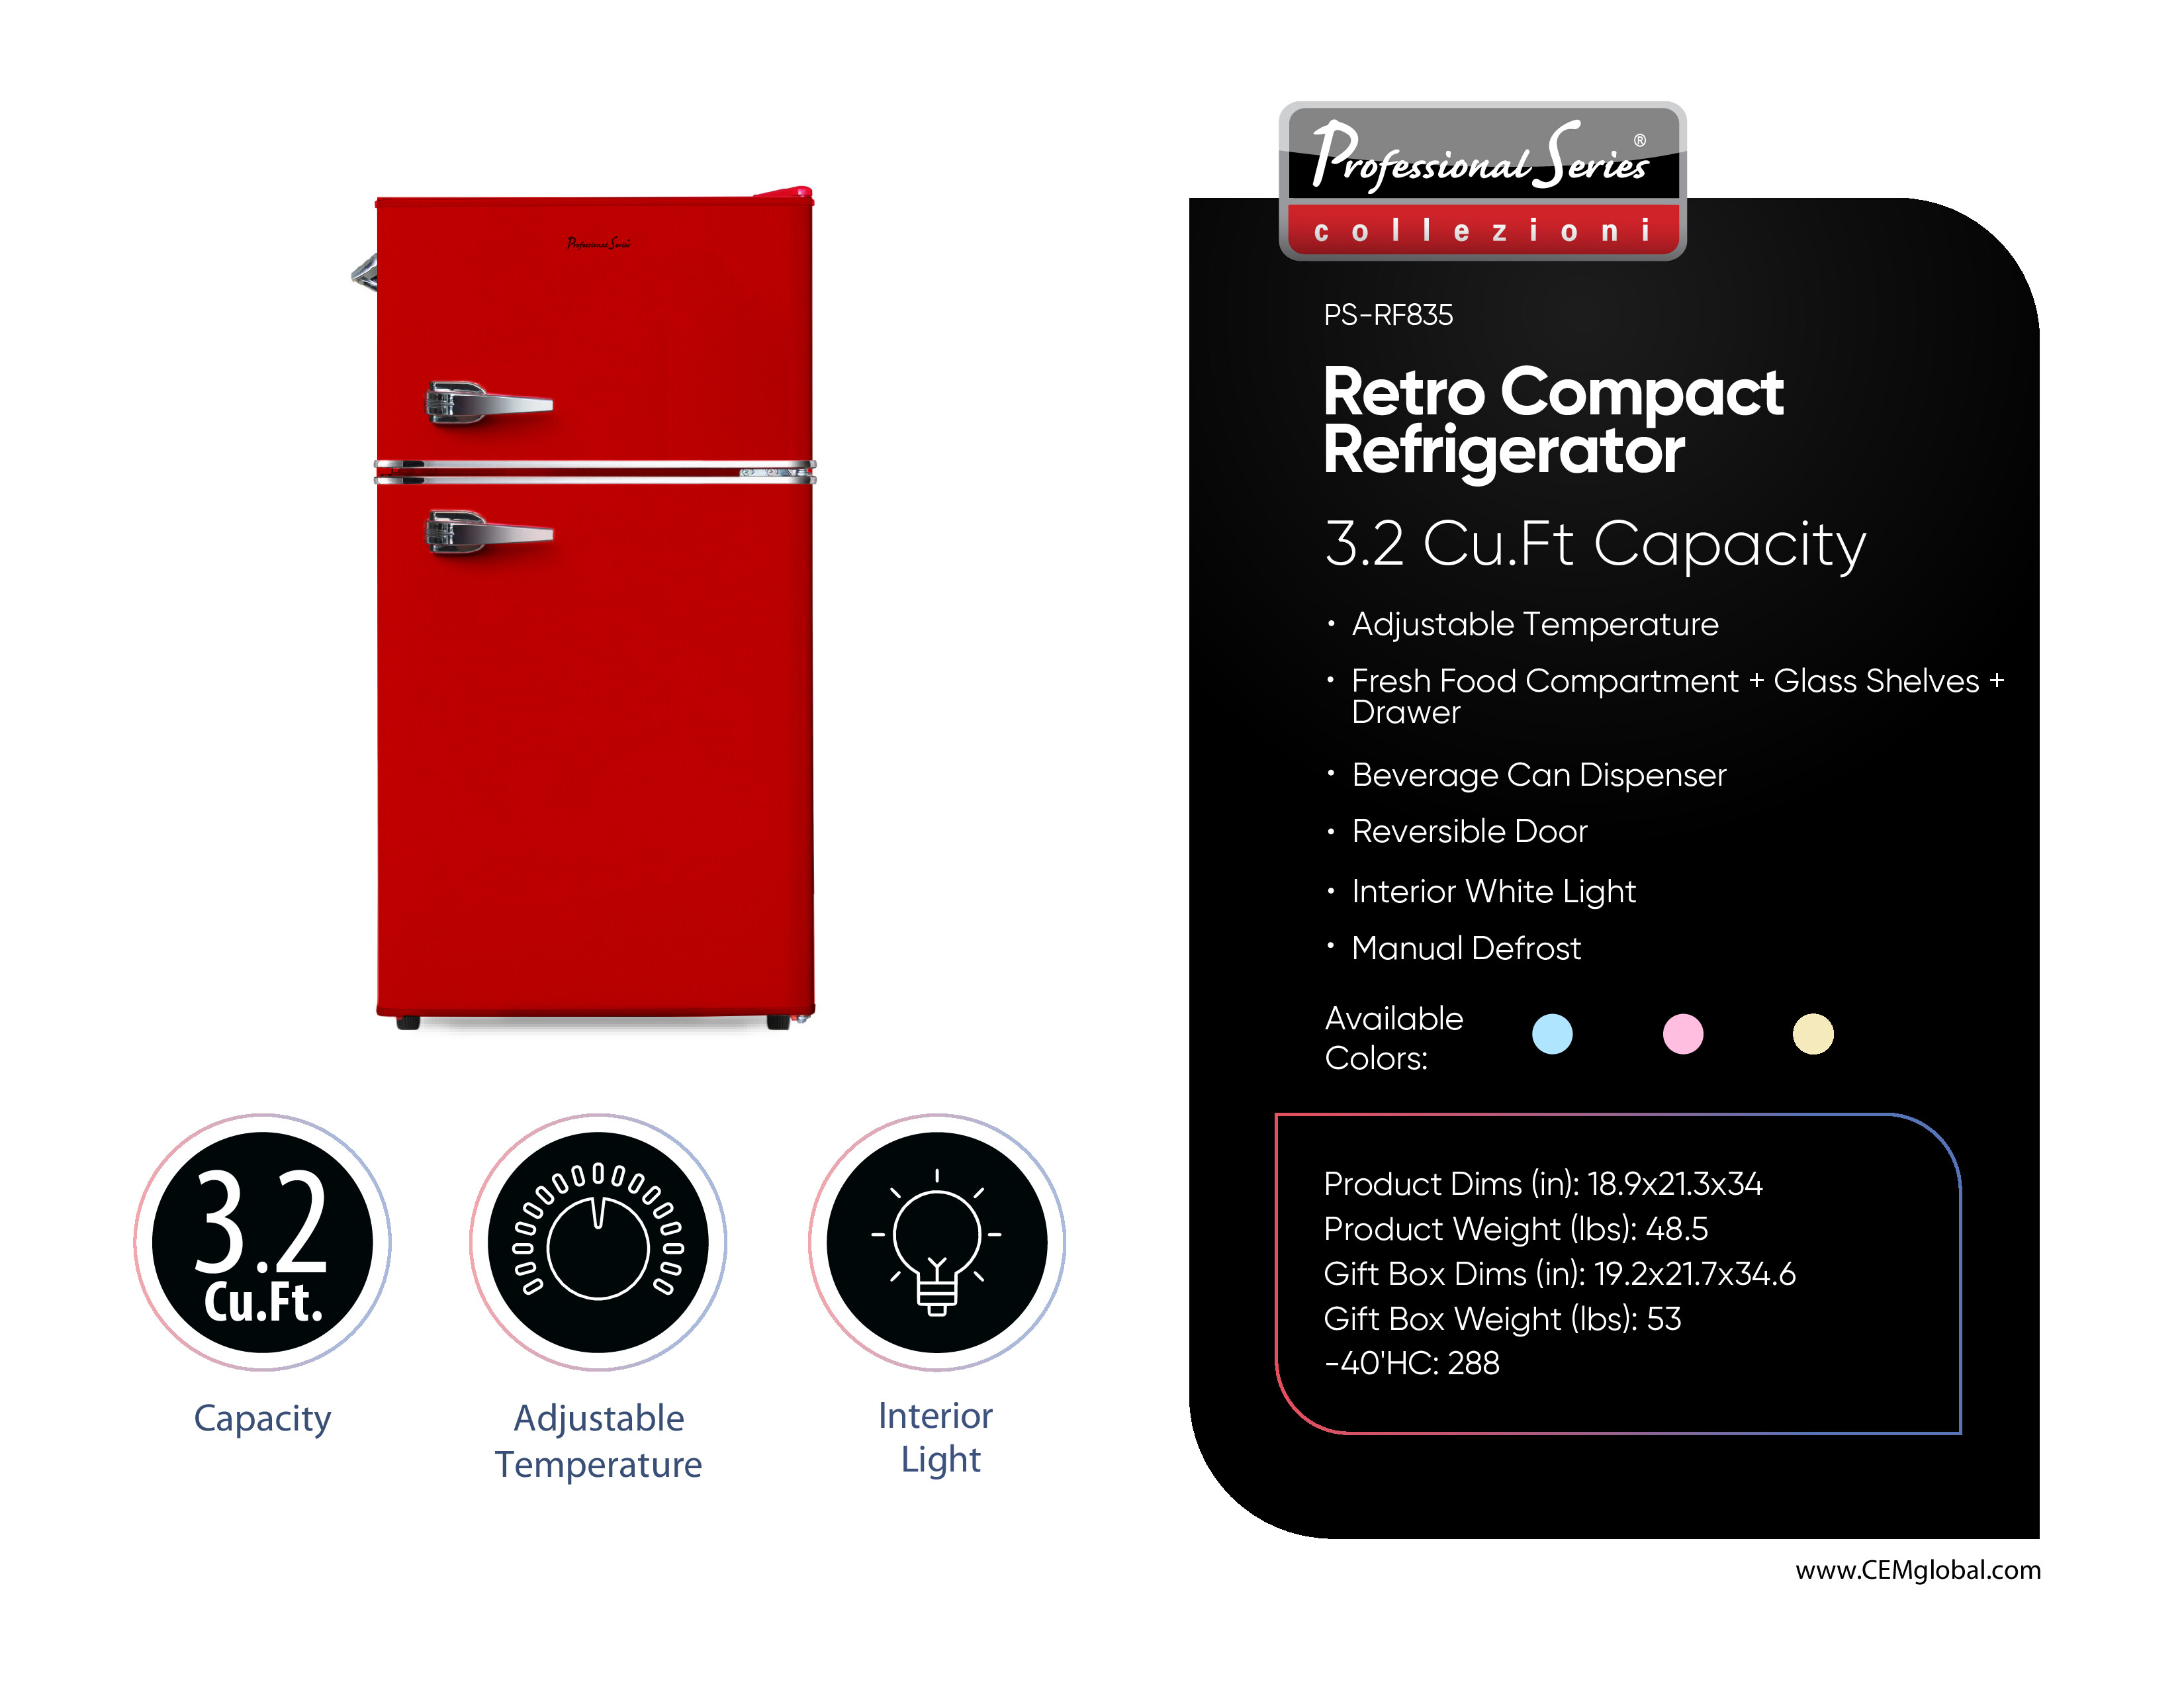 Retro Compact Refrigerator 3.2 Cu.Ft.